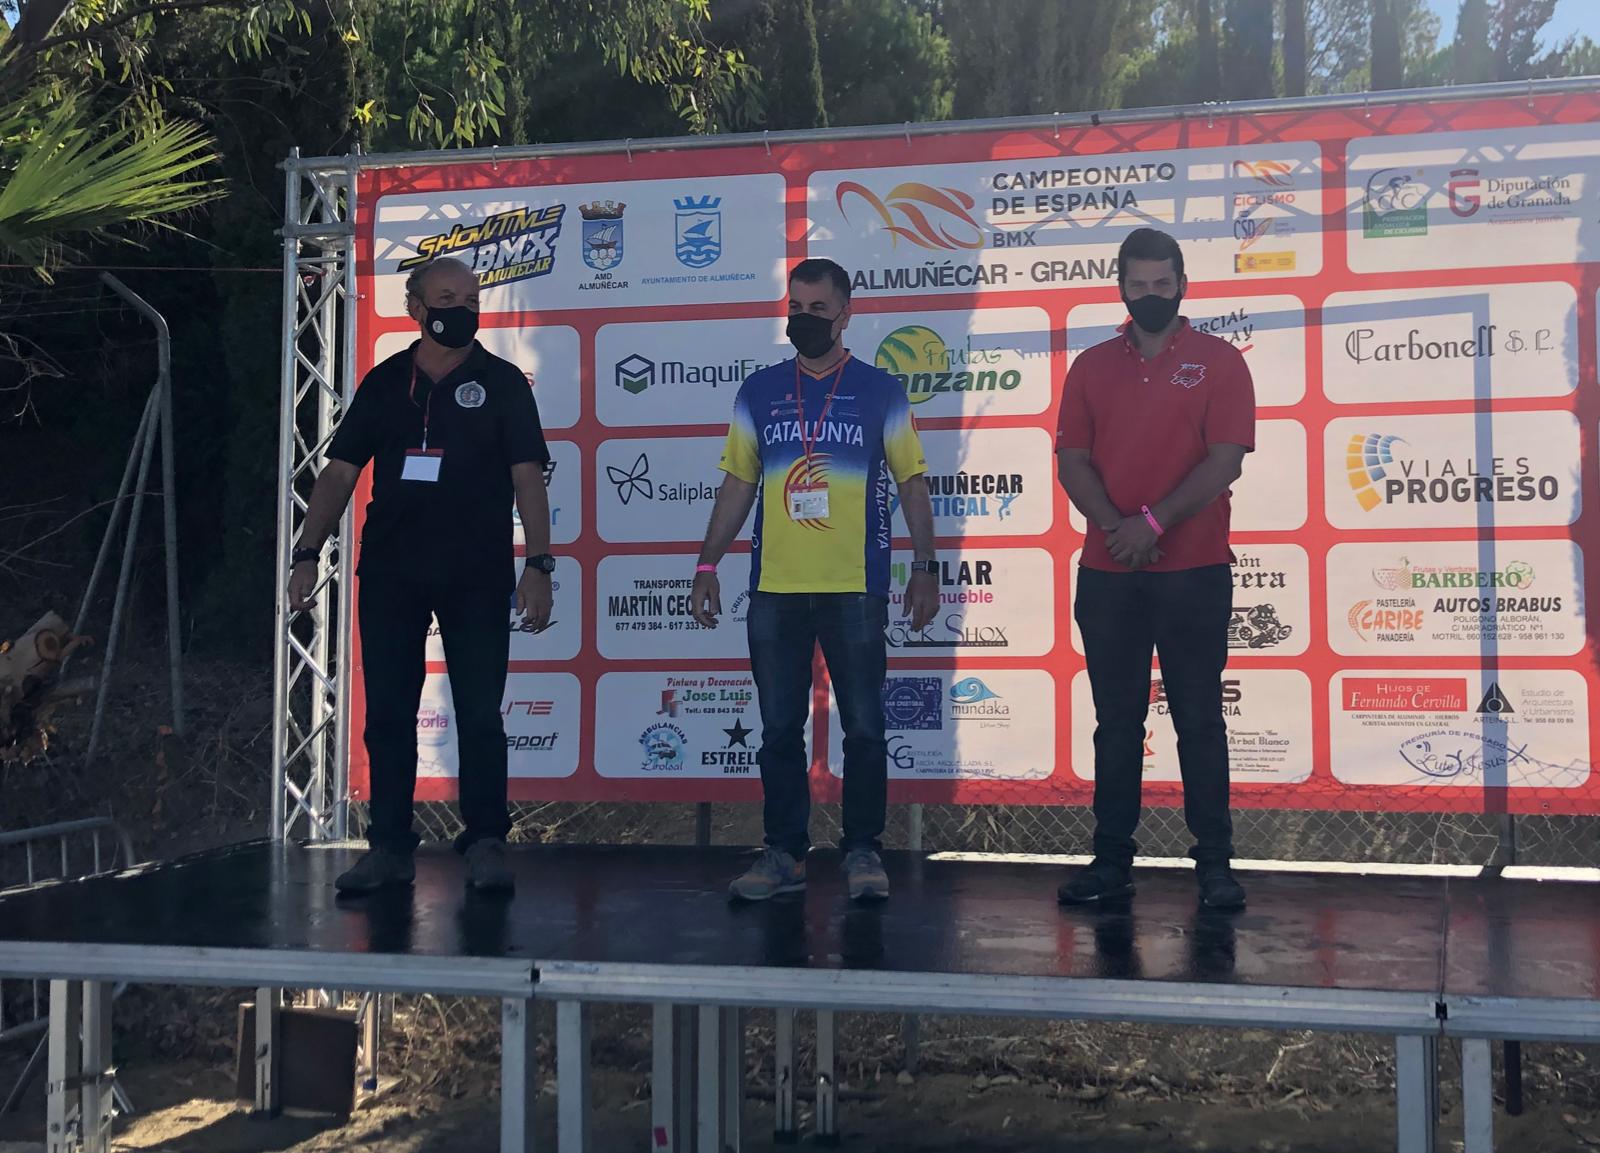 Tres medallas para la Selección Madrileña de BMX en los Nacionales de Almuñécar